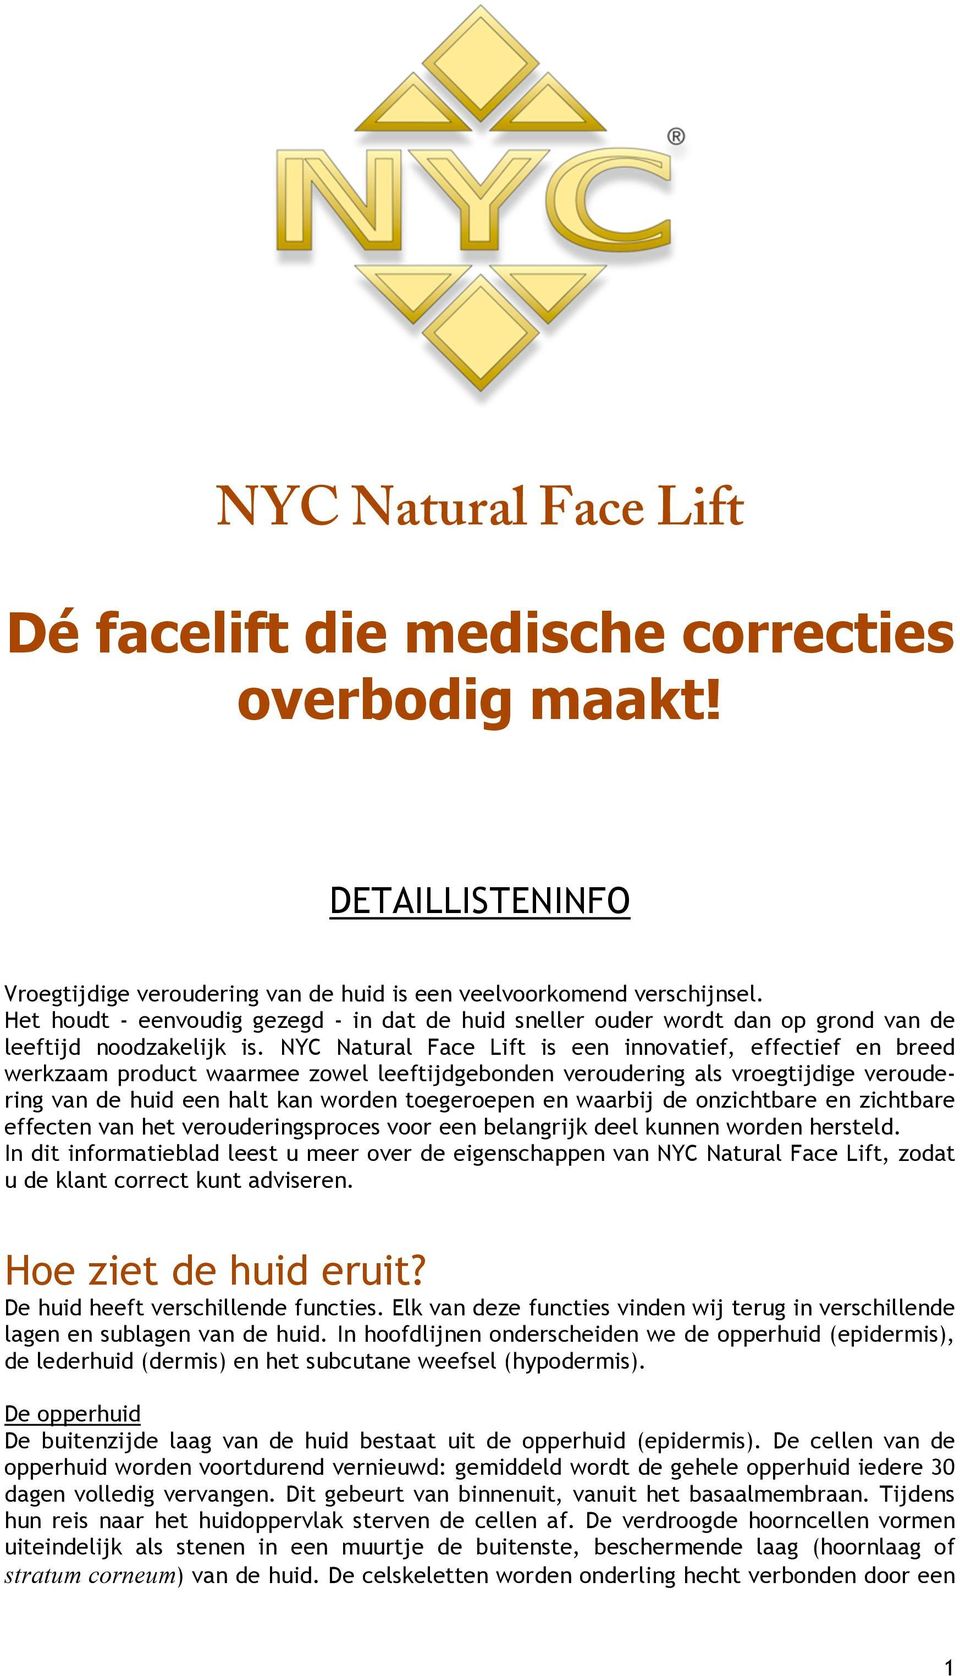 NYC Natural Face Lift is een innovatief, effectief en breed werkzaam product waarmee zowel leeftijdgebonden veroudering als vroegtijdige veroudering van de huid een halt kan worden toegeroepen en